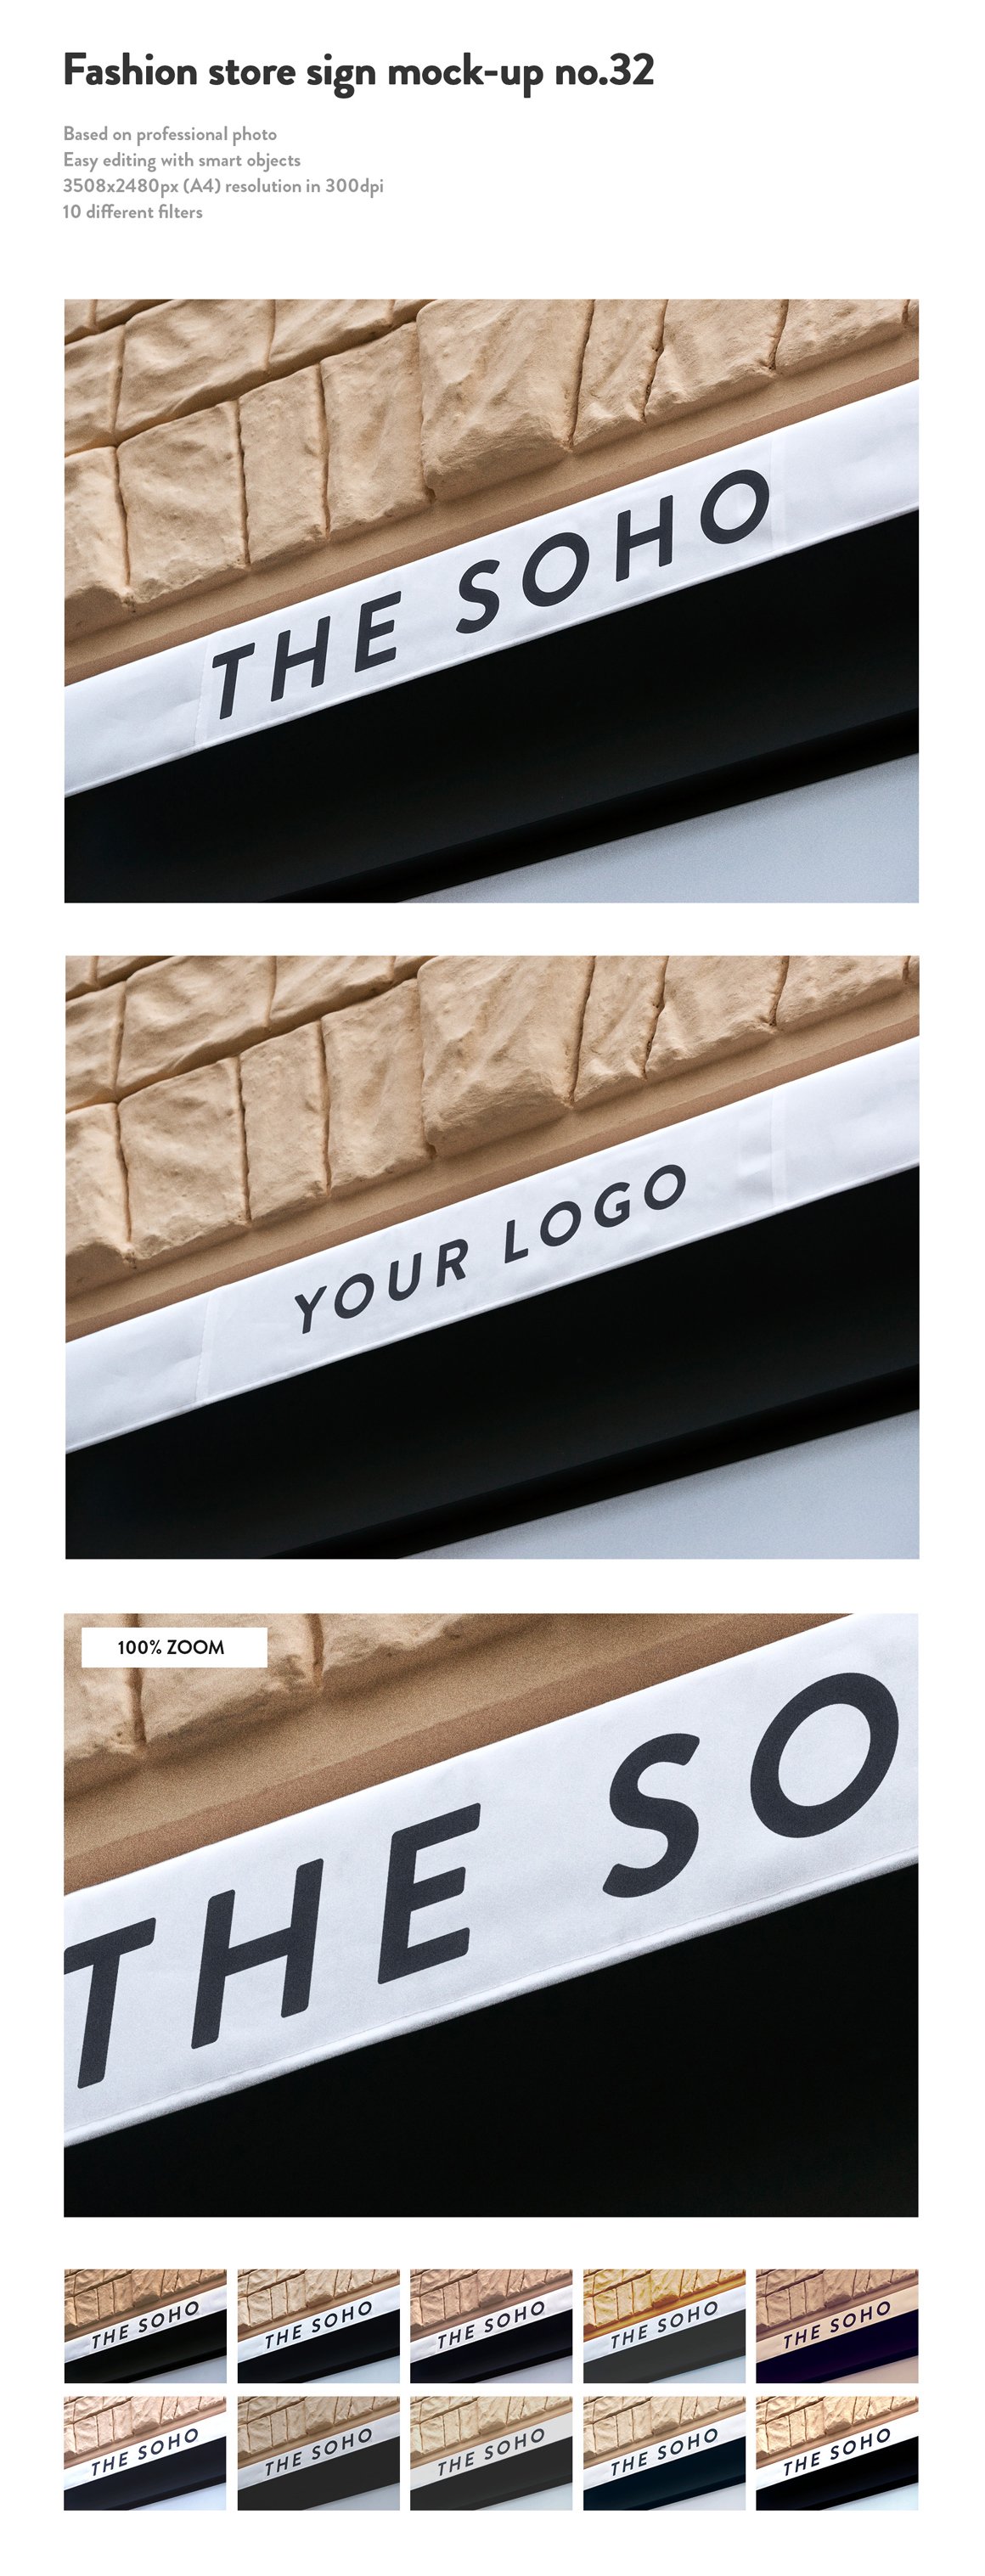 50 Sign Facade Signboard Logo Mockups